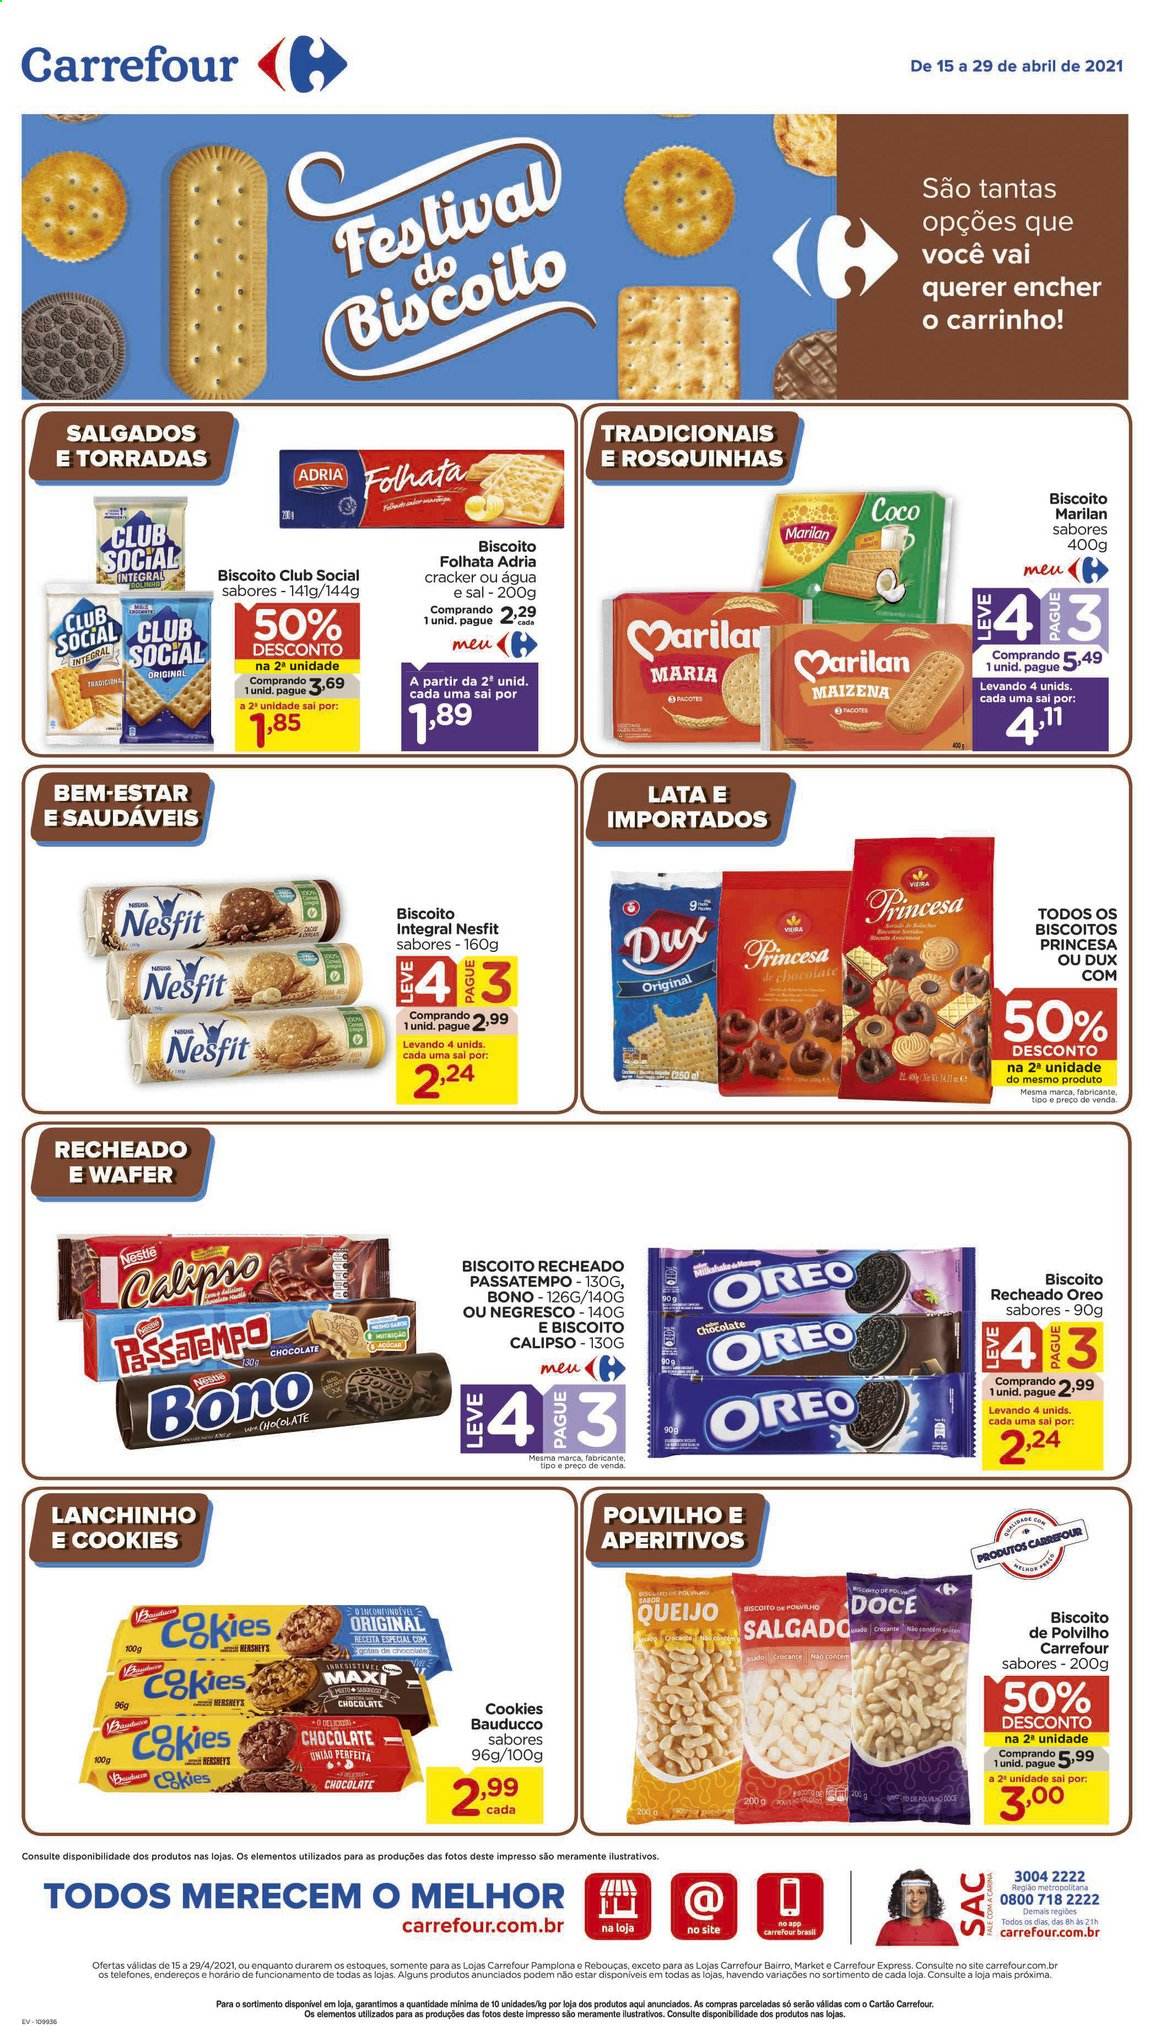 thumbnail - Folheto Carrefour Hiper - 15/04/2021 - 29/04/2021 - Produtos em promoção - queijo, Oreo, biscoito, folhata, Nestlé, biscoito recheado, biscoito de polvilho, cracker, sal, maizena. Página 3.